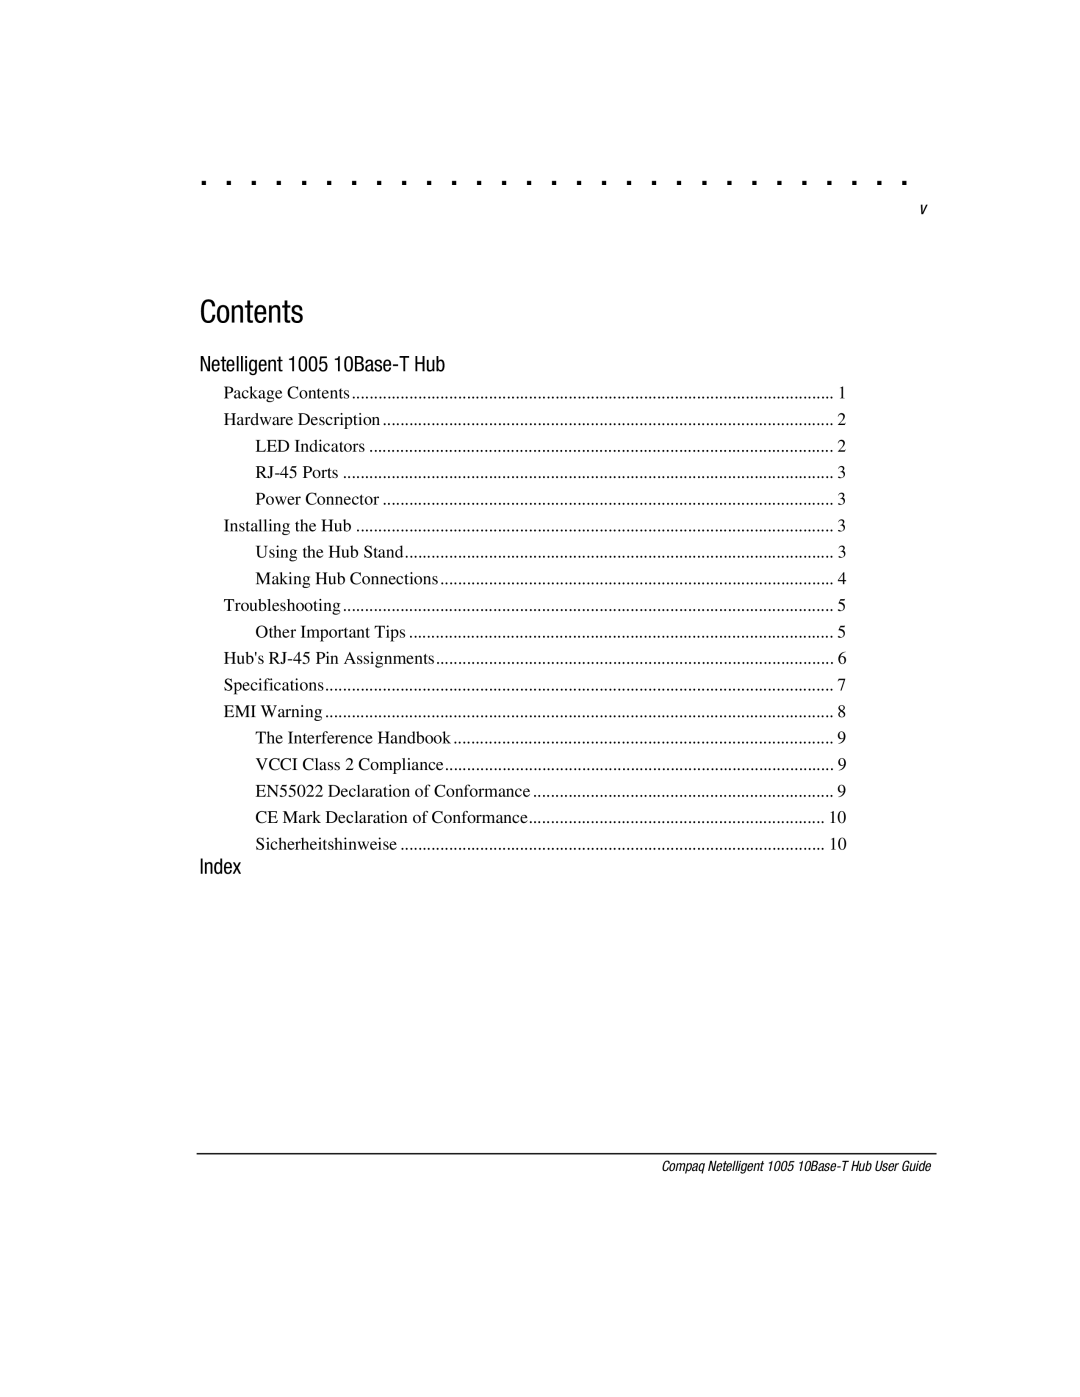 Compaq manual Contents, Netelligent 1005 10Base-T Hub, Index 